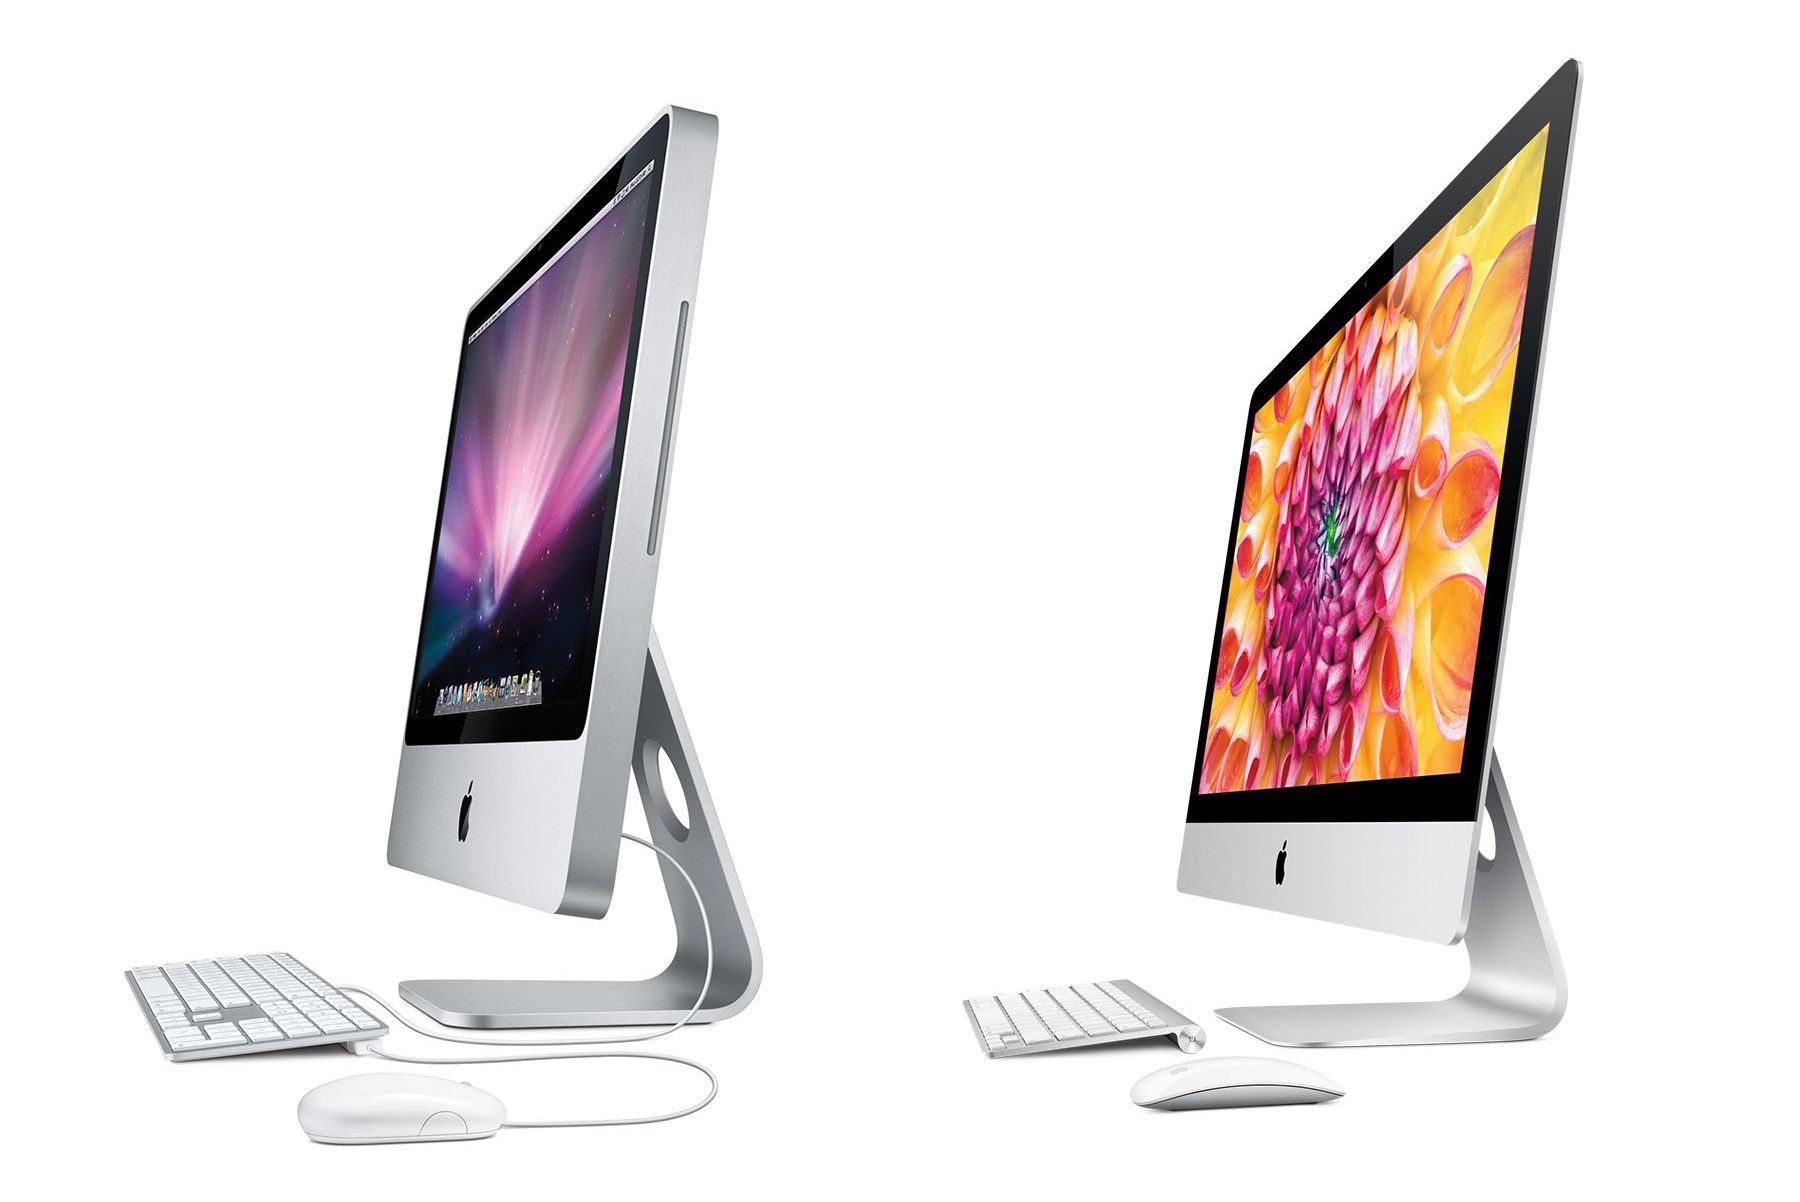 Raport: iMac 2021 z nowym dizajnem i superszybkim następcą ...